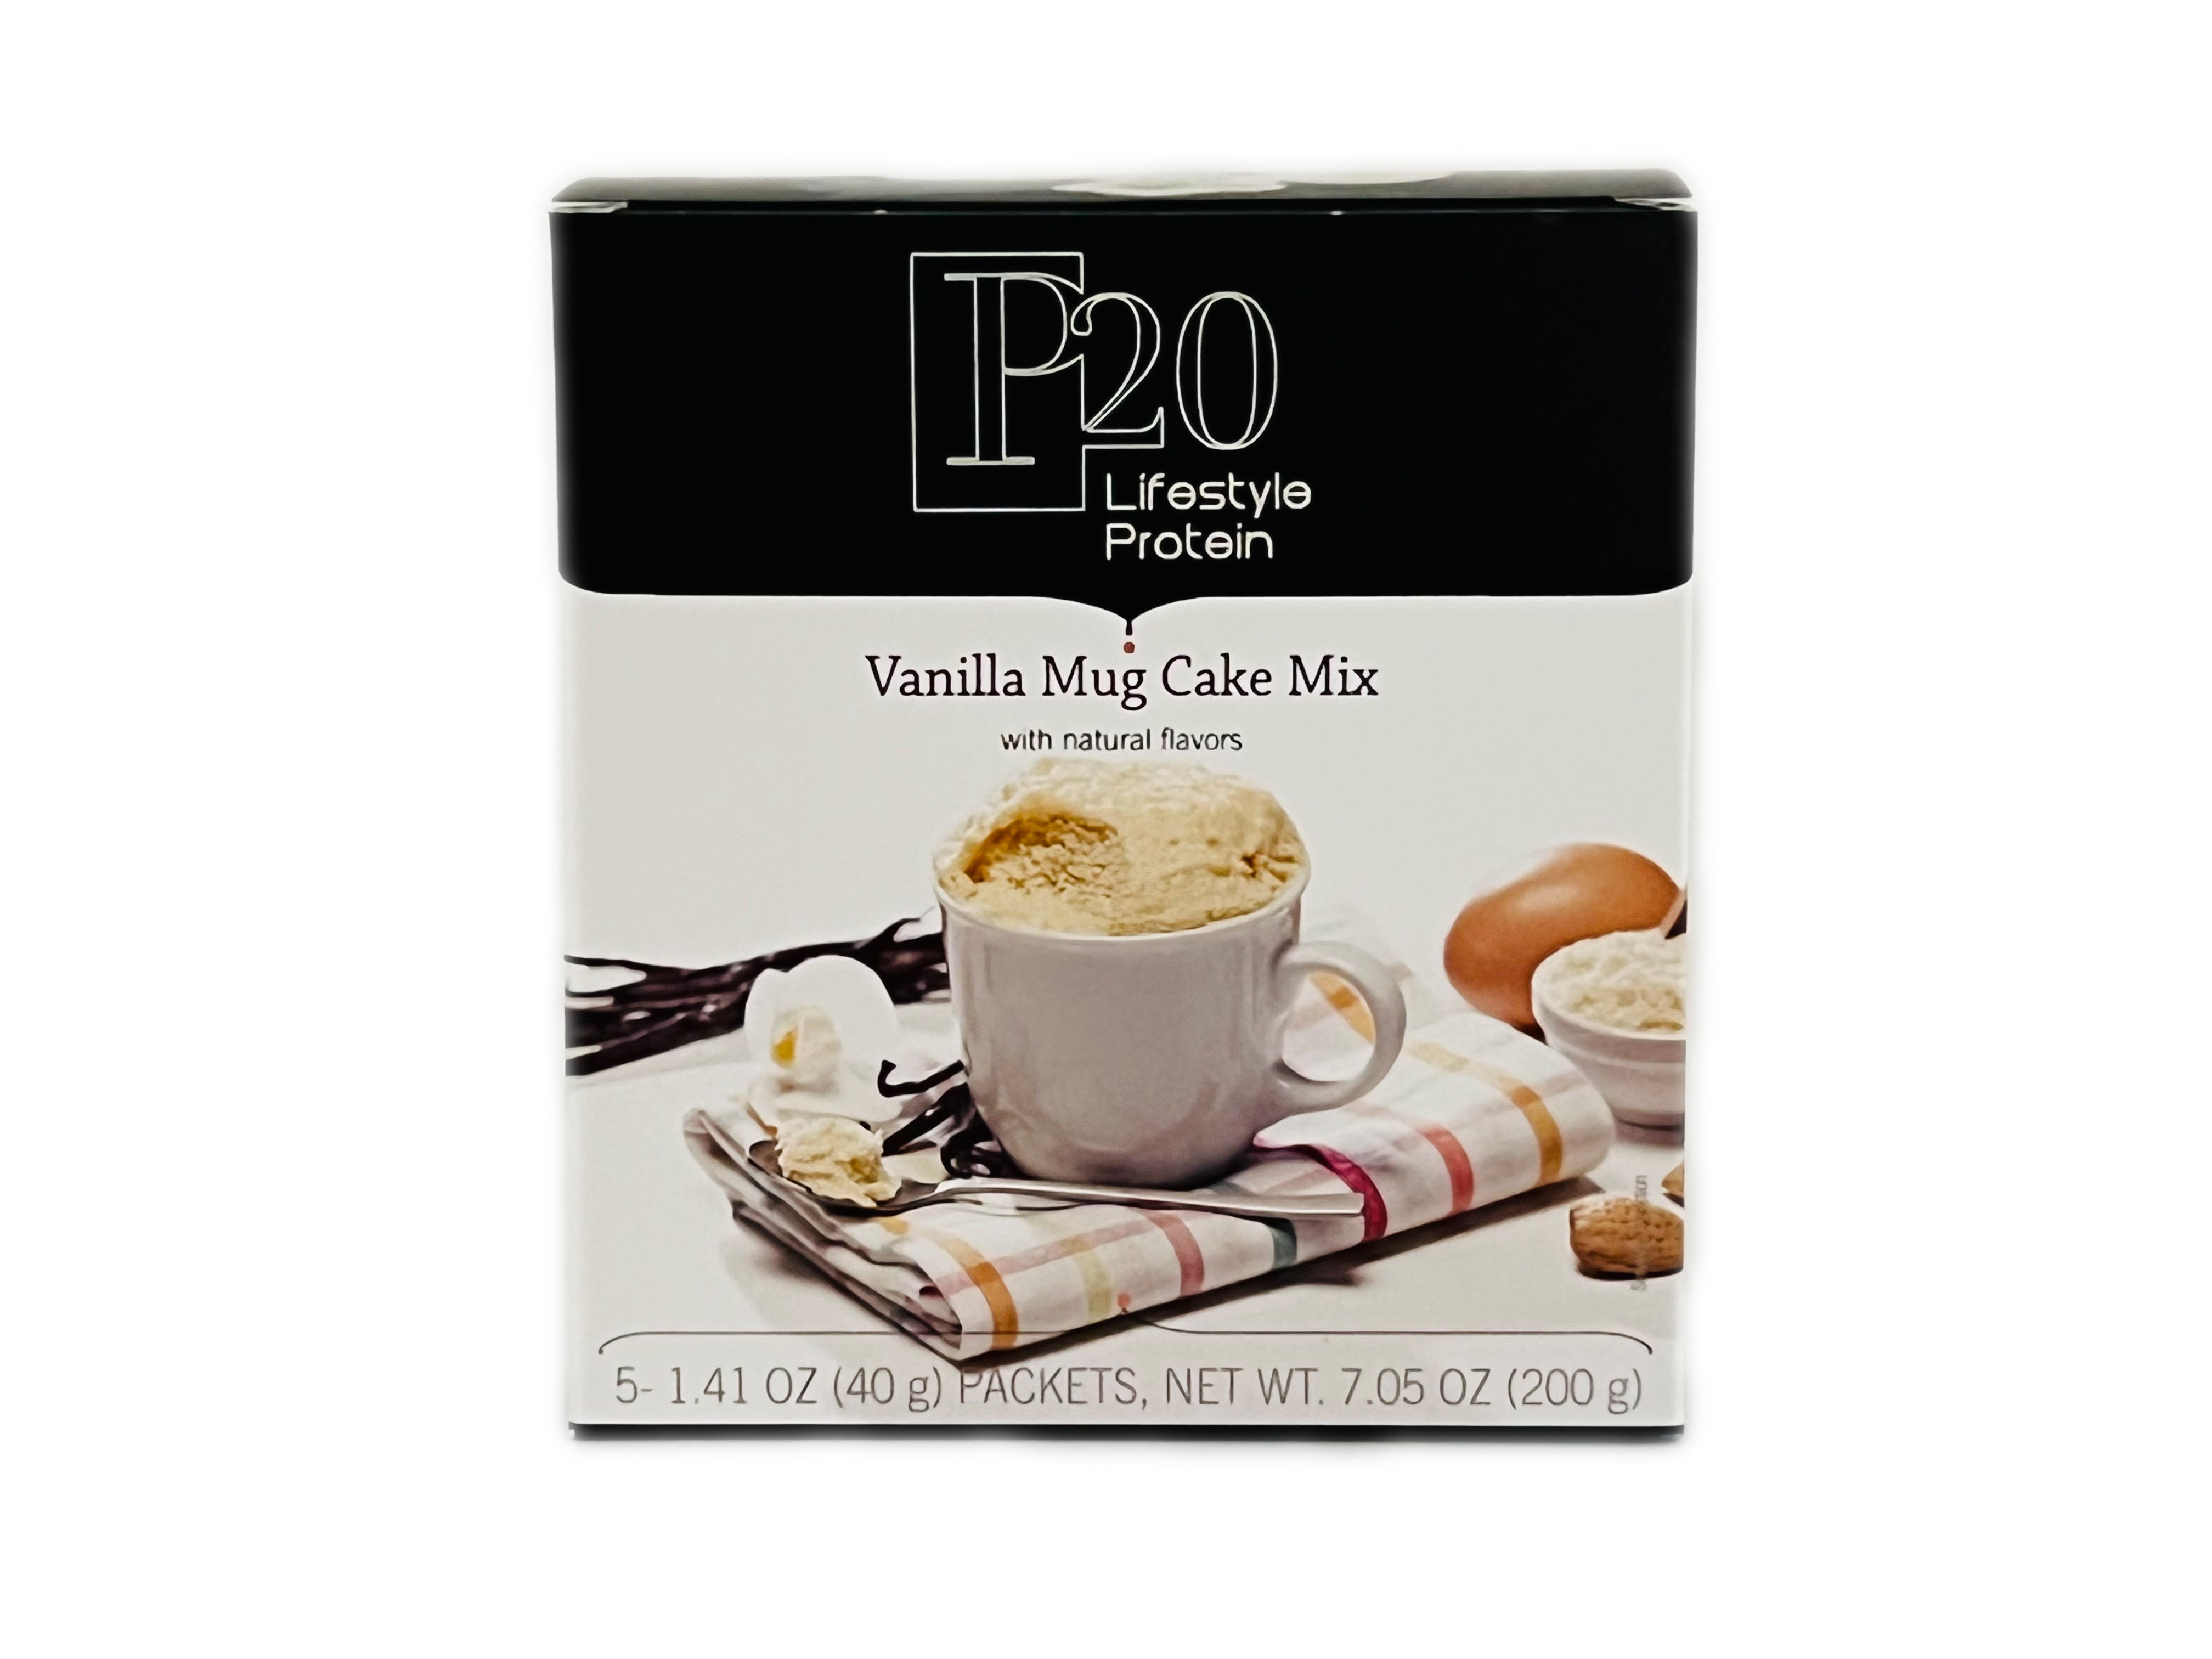 Vanilla Mug Cake Mix is HERE!